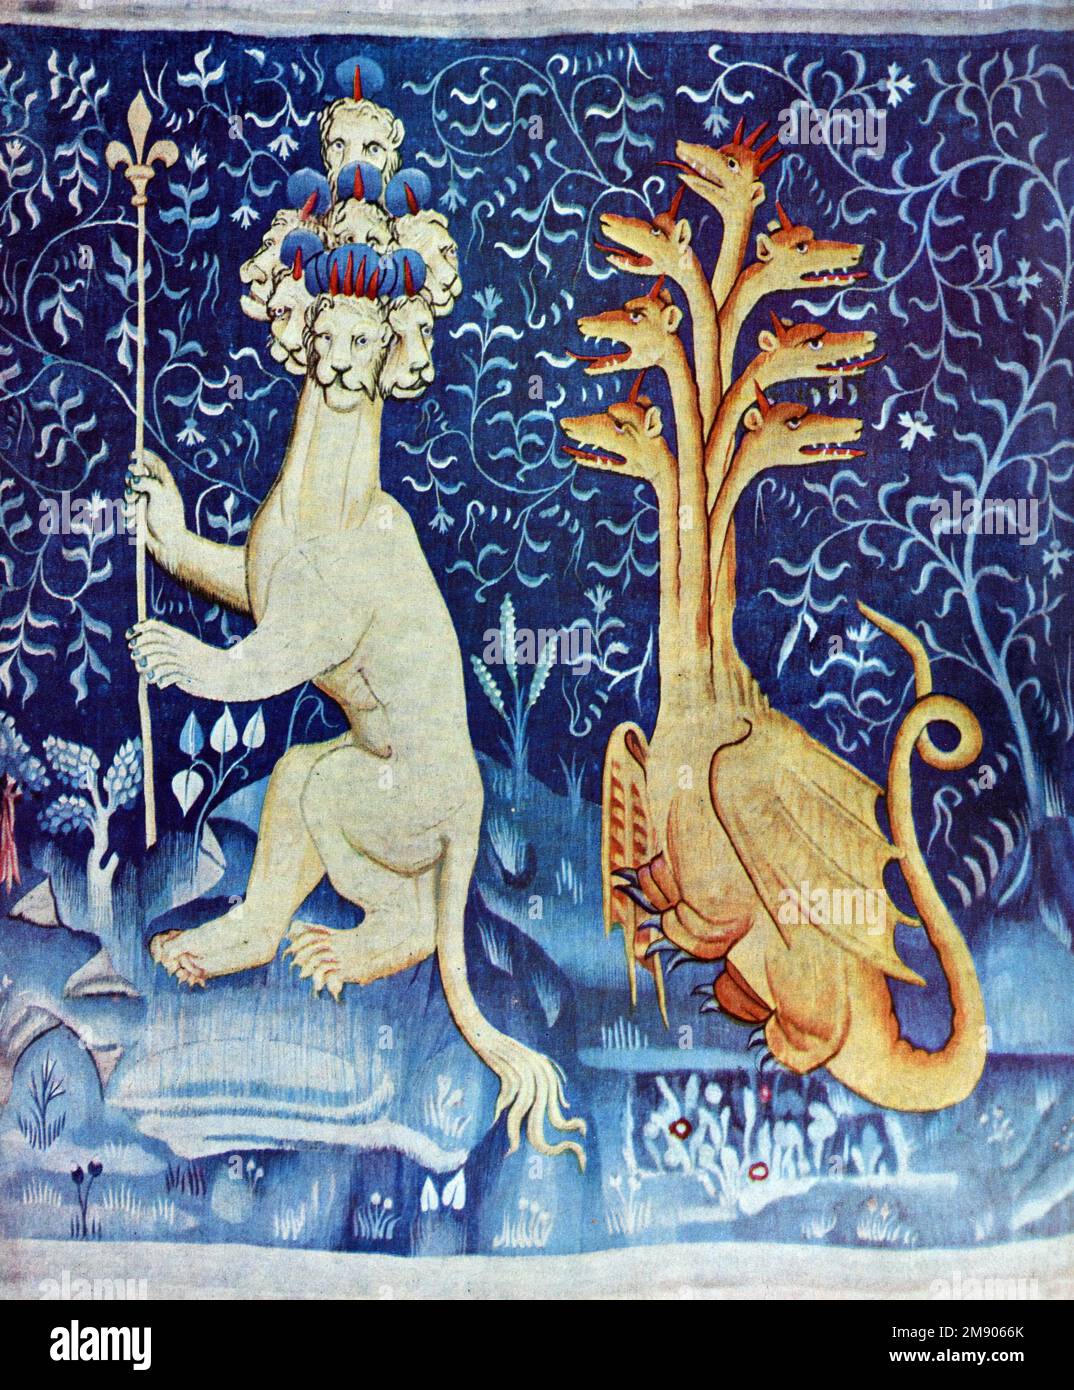 Mostri e drago particolare dal Medioevo Apocalisse Arazzo (1377-1382) o Arazzo dell'Apocalisse di Angers, basato sul Libro dell'Apocalisse Angers Château, Francia Foto Stock